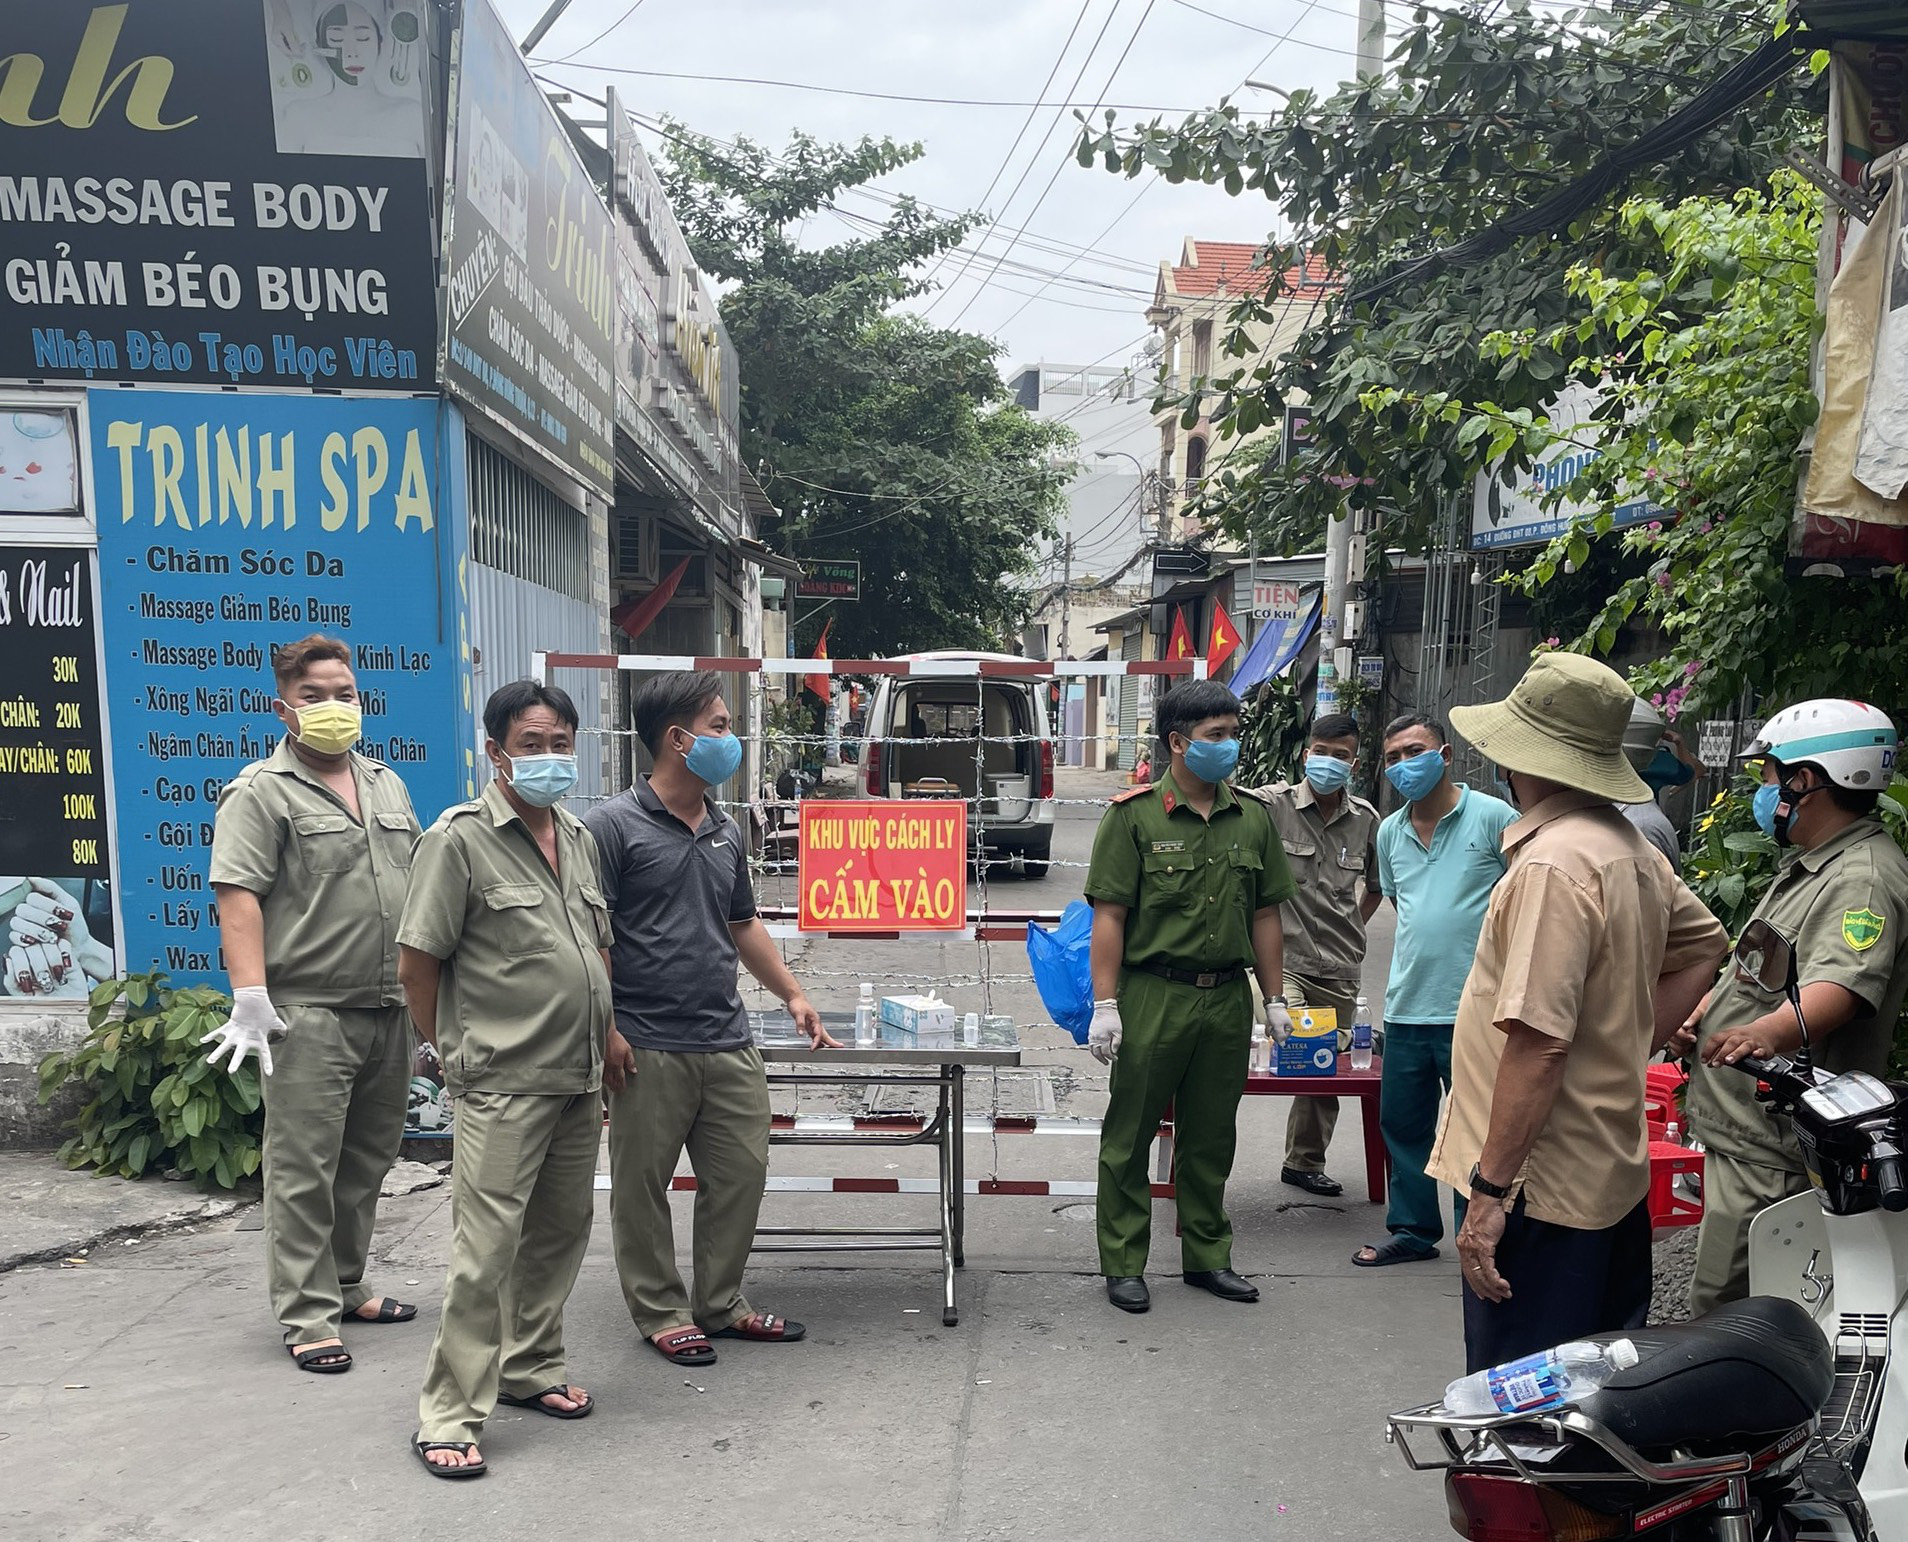 NÓNG: Mẹ 1 nhân viên sân bay Tân Sơn Nhất dương tính SARS-CoV-2, phong tỏa 1 khu vực ở quận 12 - Ảnh 1.